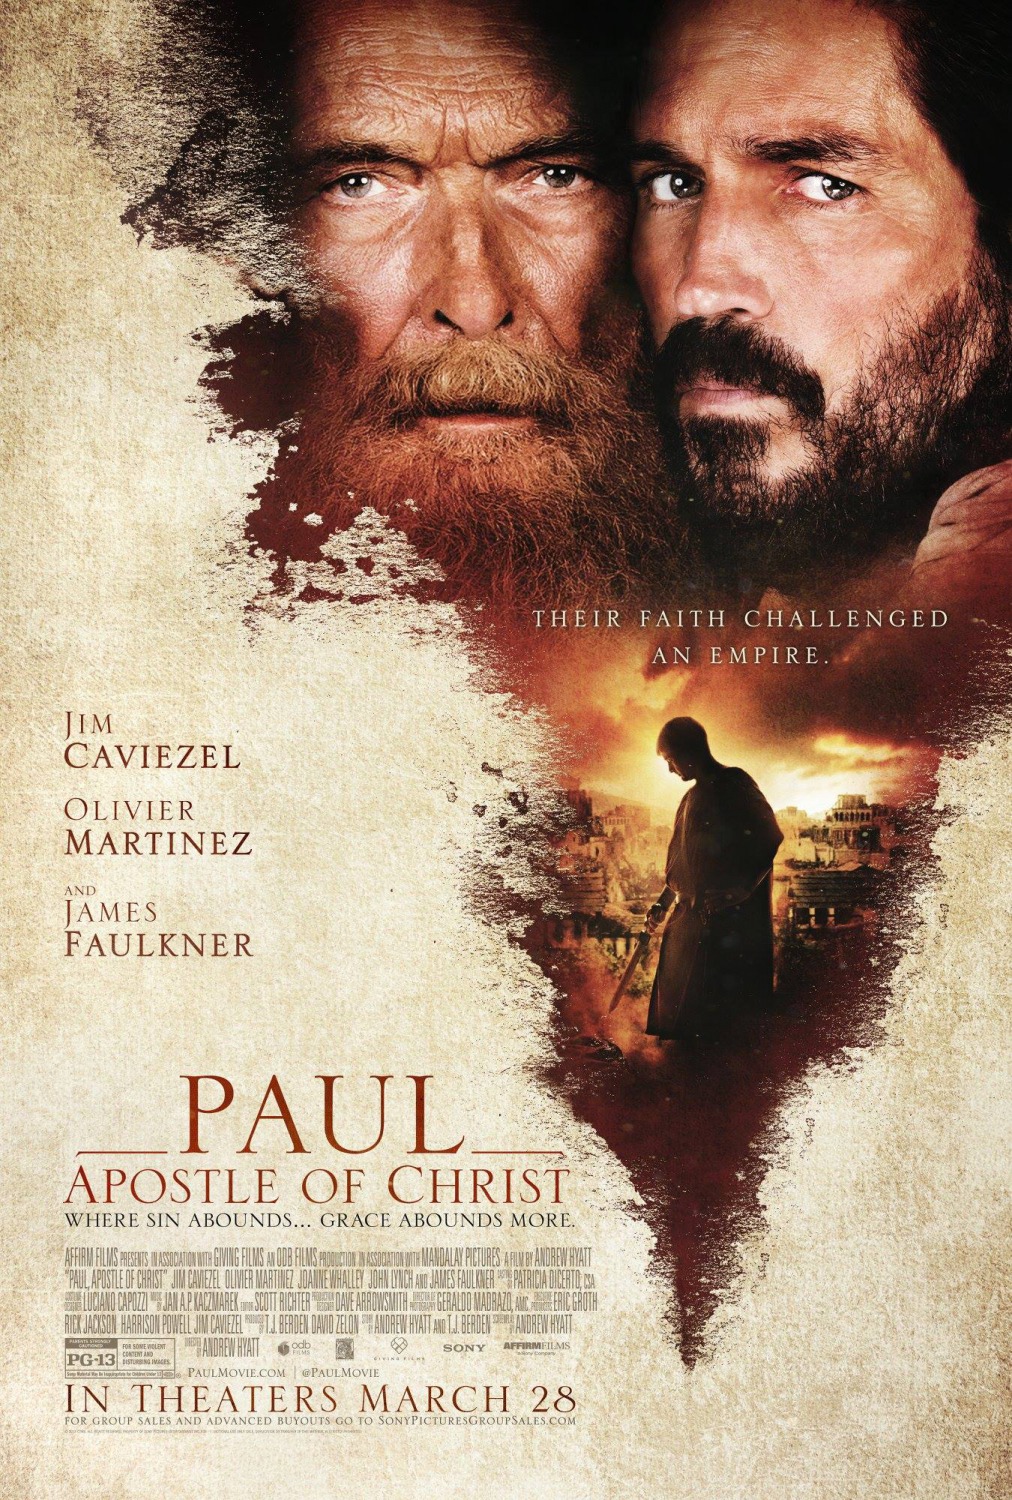 Постер - Павел, апостол Христа: 1012x1500 / 662.66 Кб